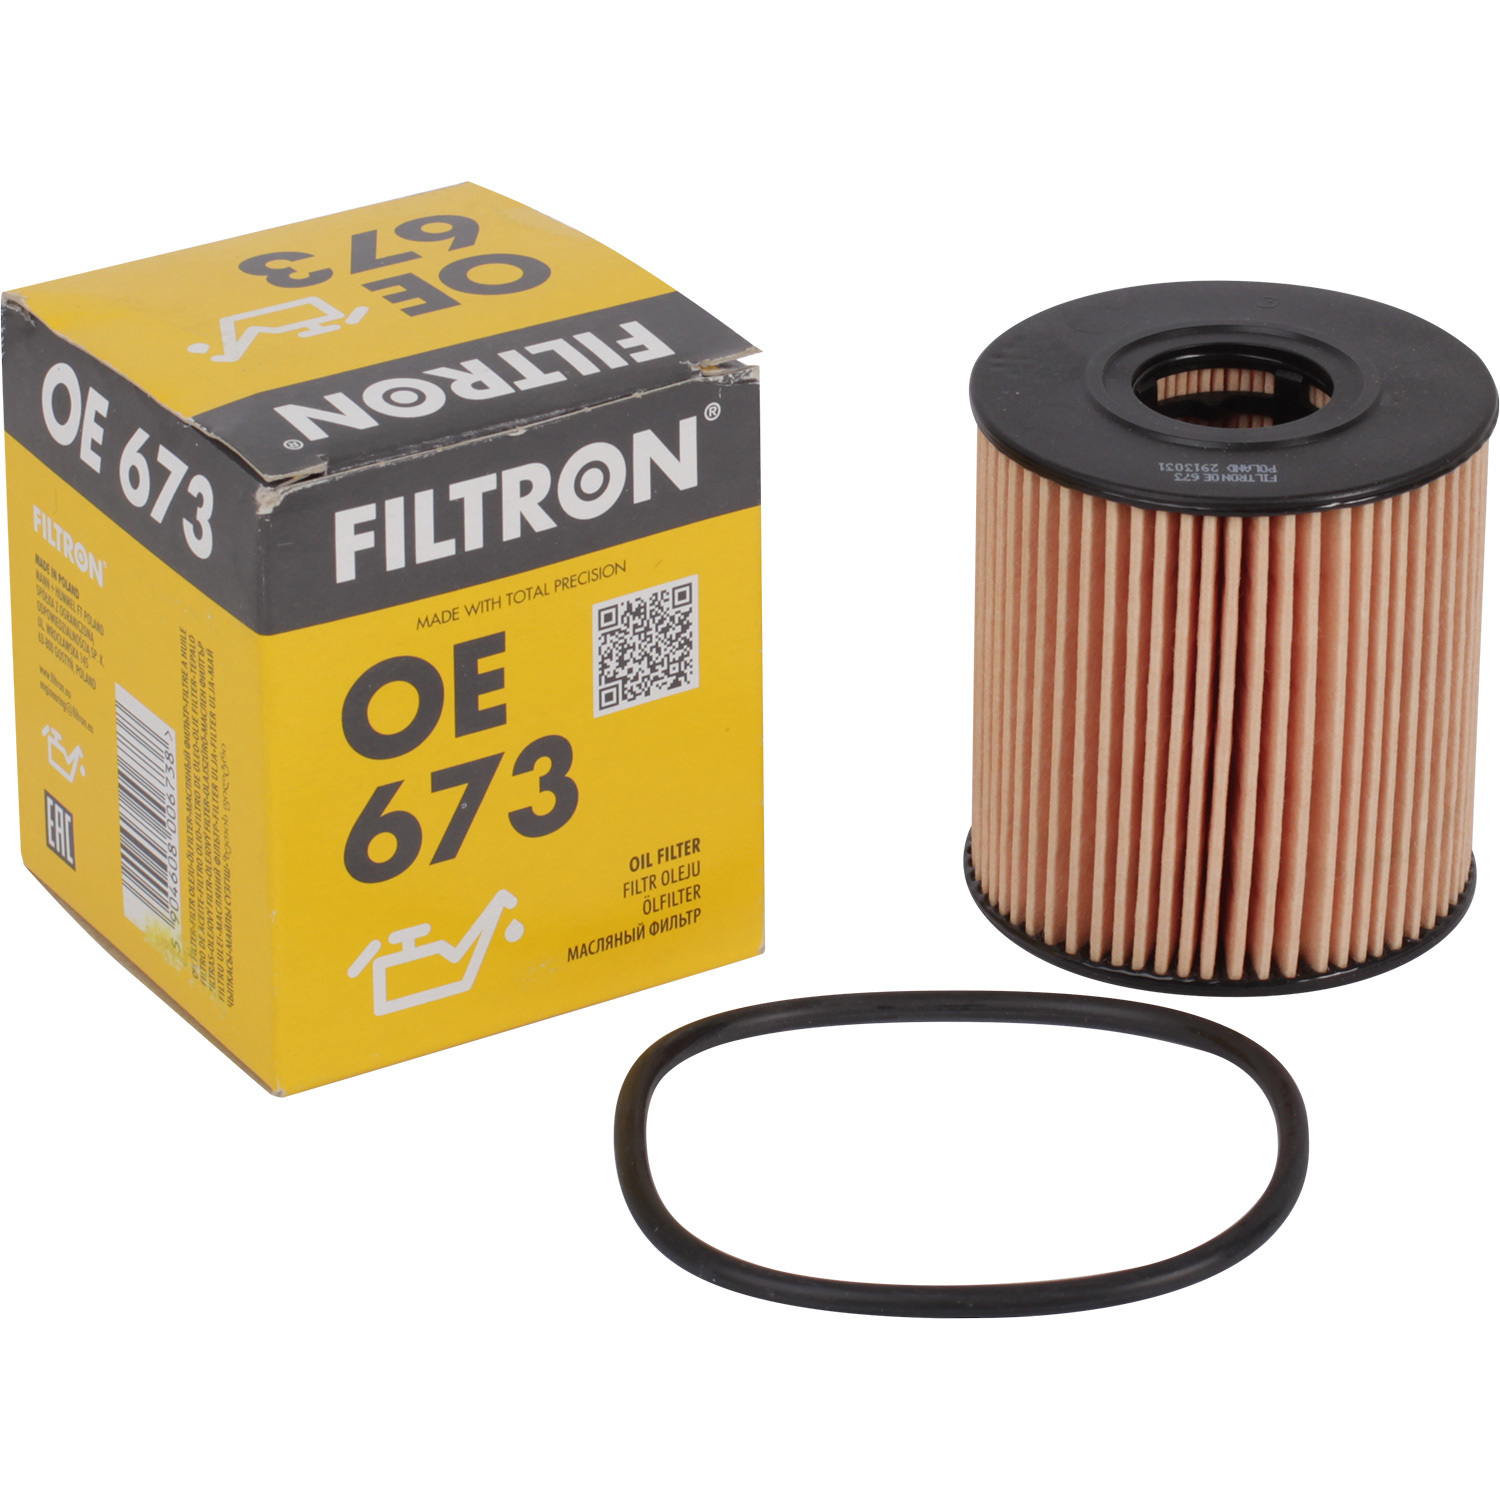 Фильтры Filtron Фильтр масляный Filtron OE673 фильтры filtron фильтр масляный filtron op617